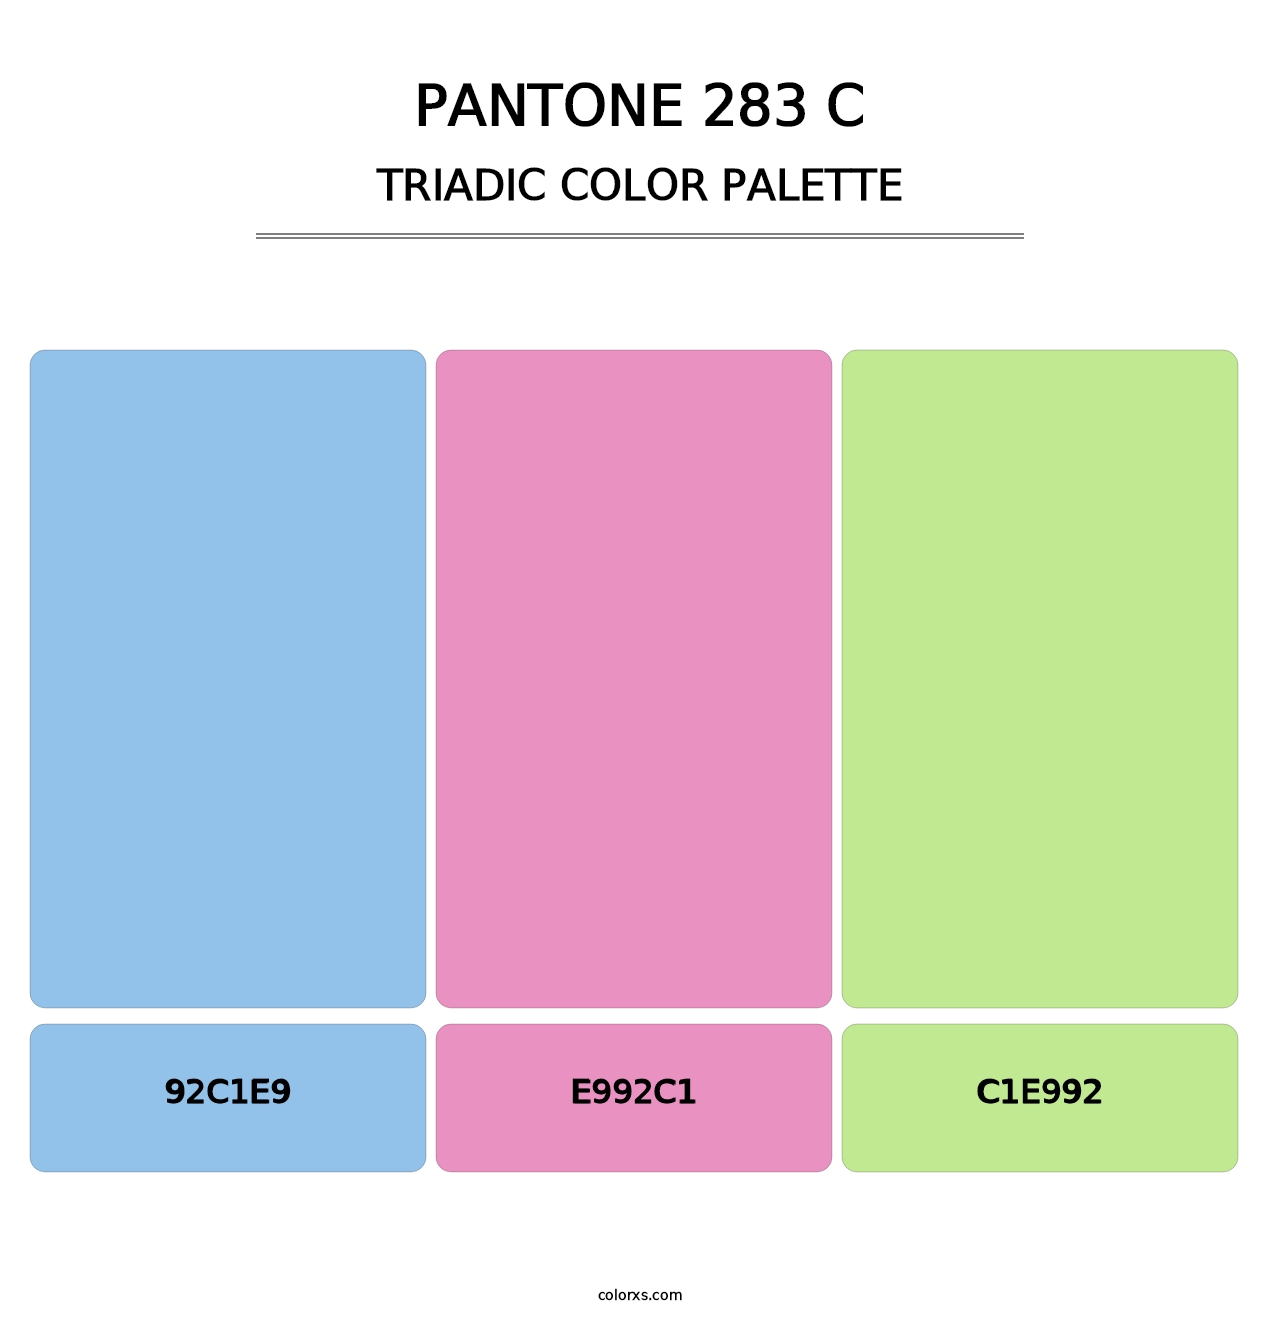 PANTONE 283 C - Triadic Color Palette